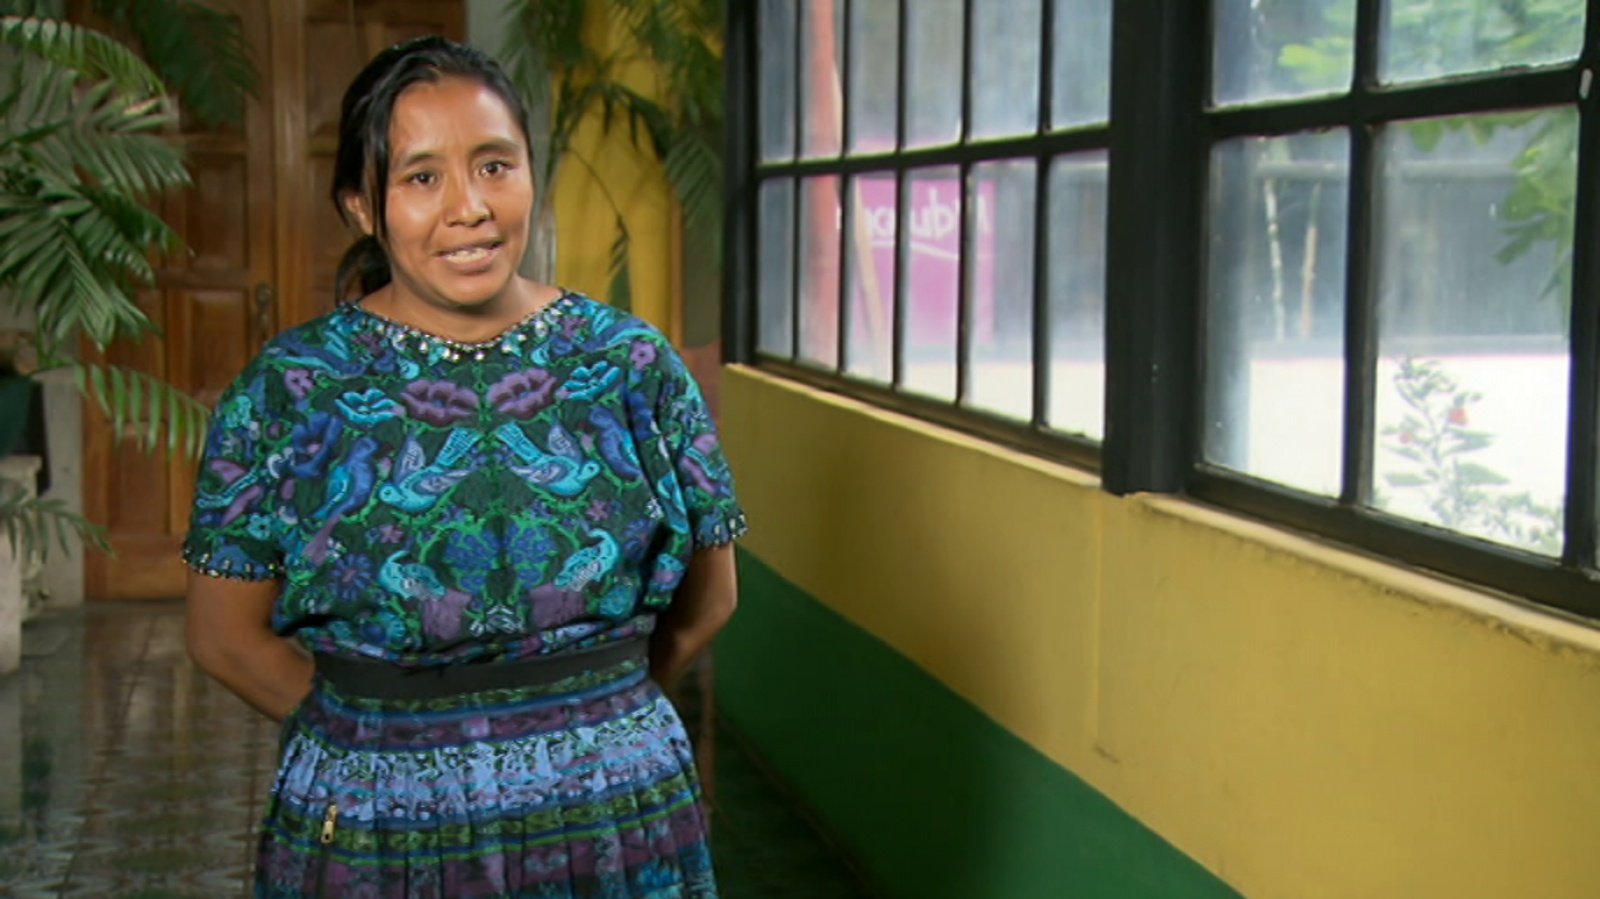 Pueblo de Dios - Guatemala: Tierra, techo y solidaridad (Guatemala 1)